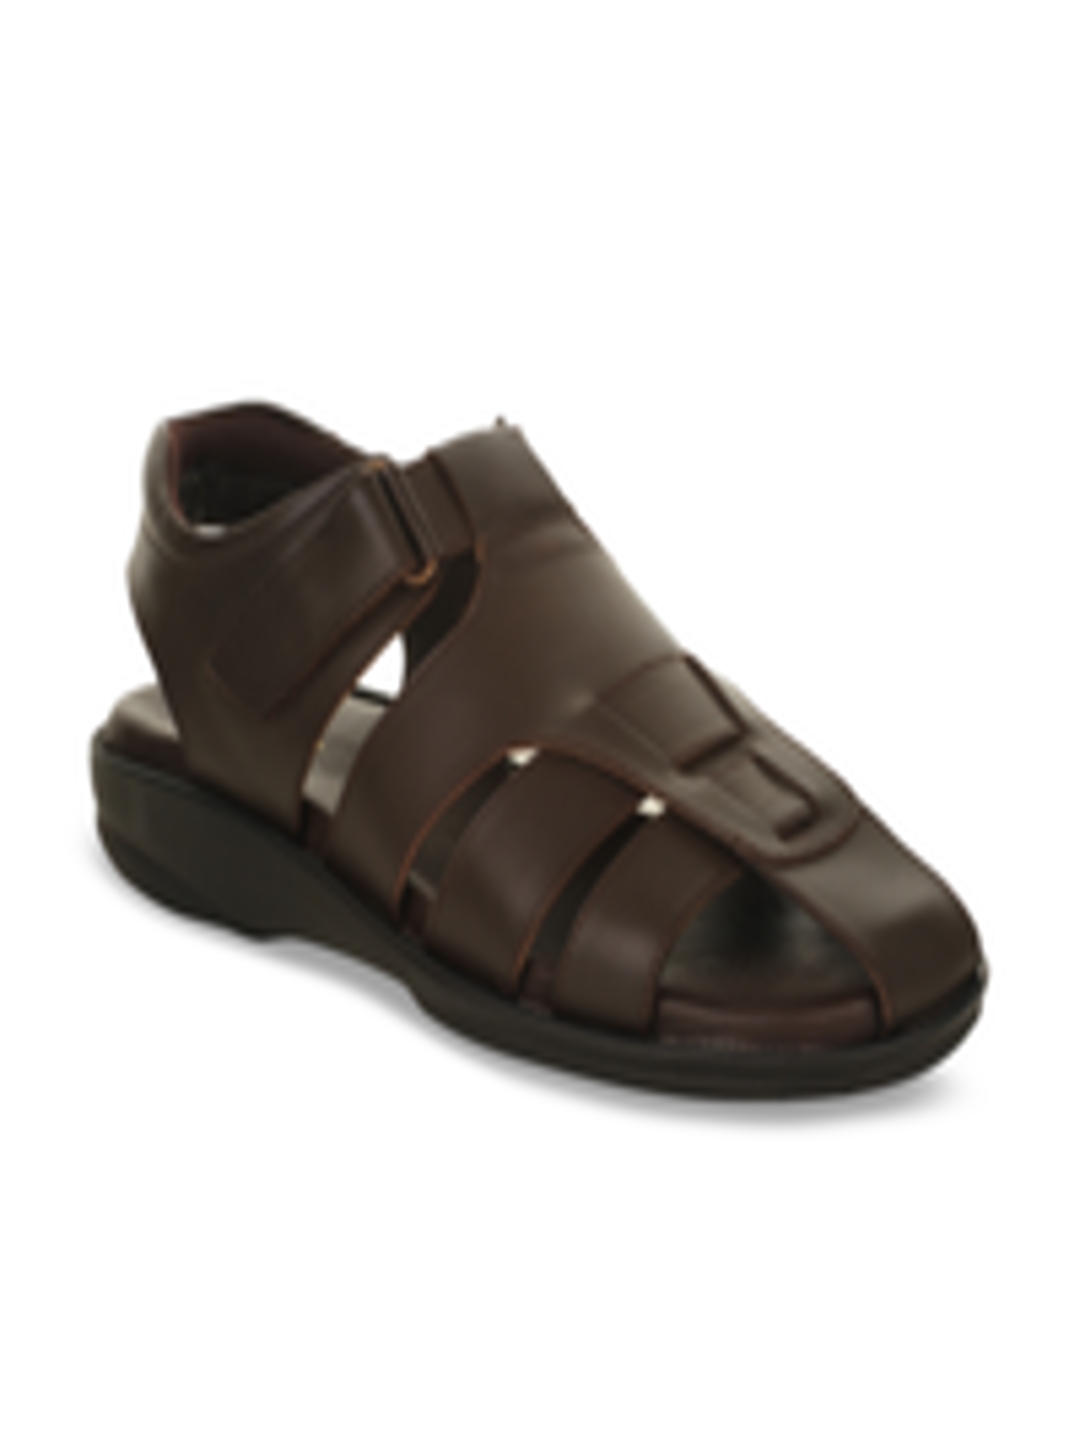 Buy Coolers Men Brown Comfort Sandals - Sandals for Men 7884909 | Myntra